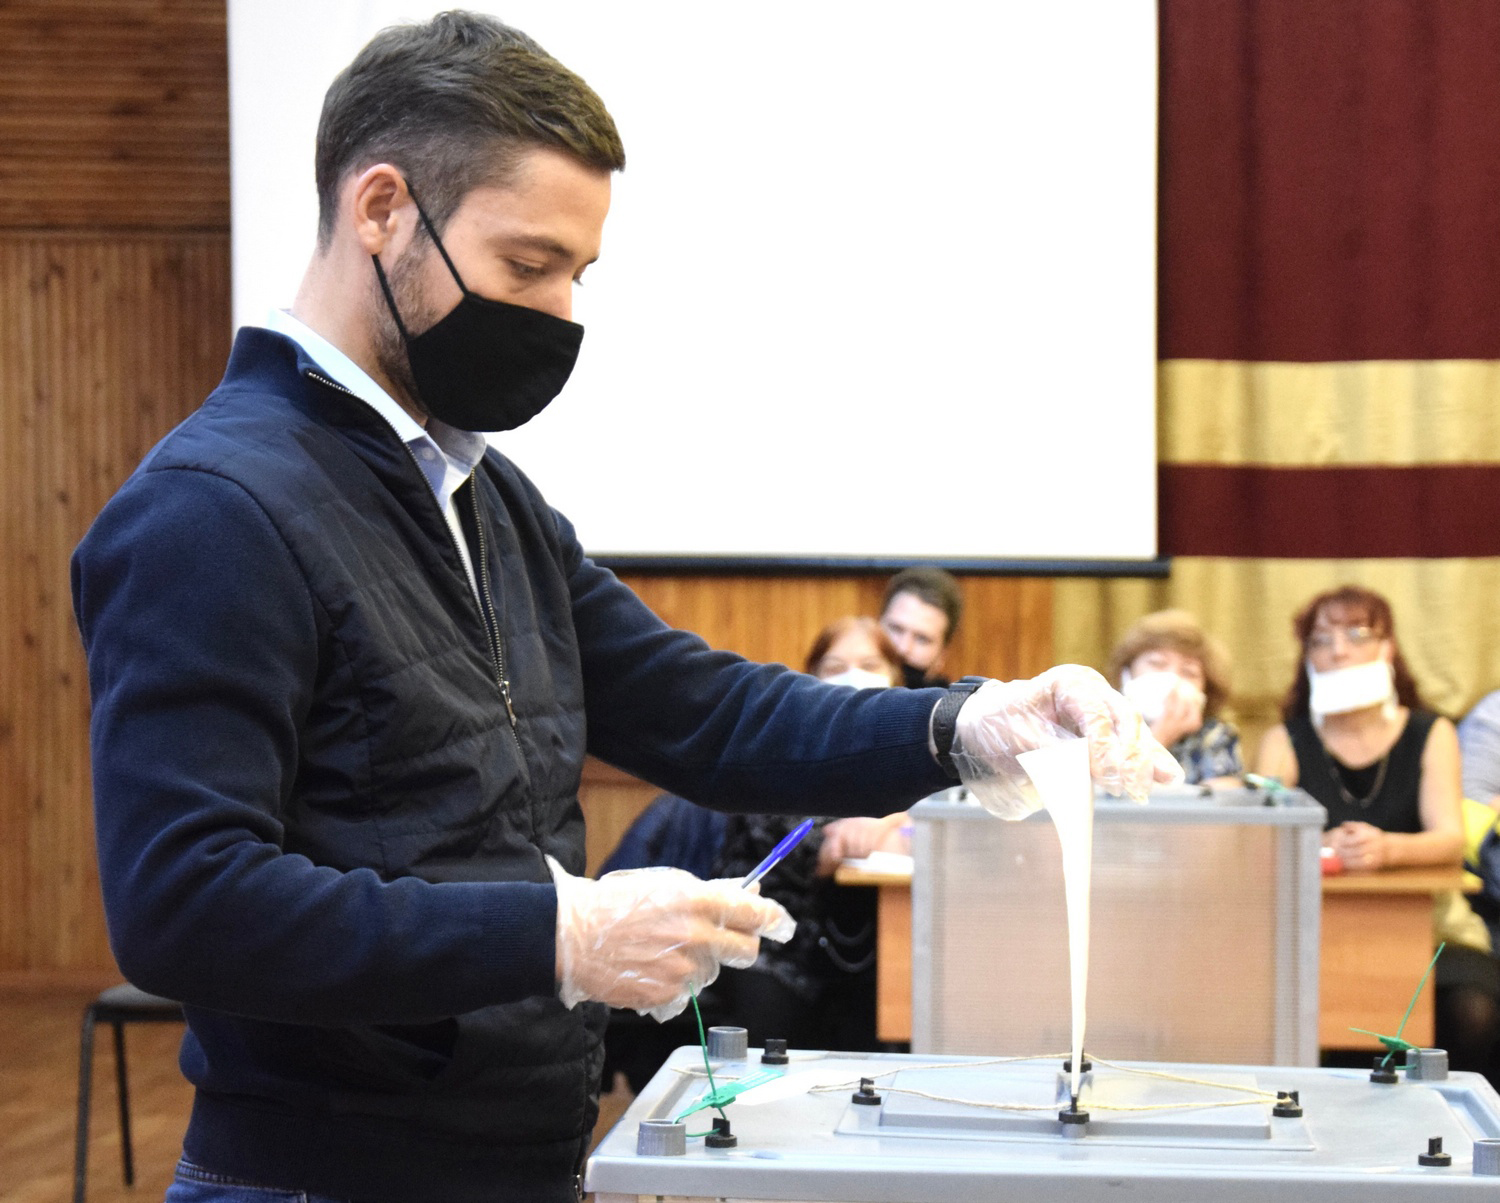 Александр Якубовский проголосовал на выборах депутатов Государственной Думы РФ в Братске